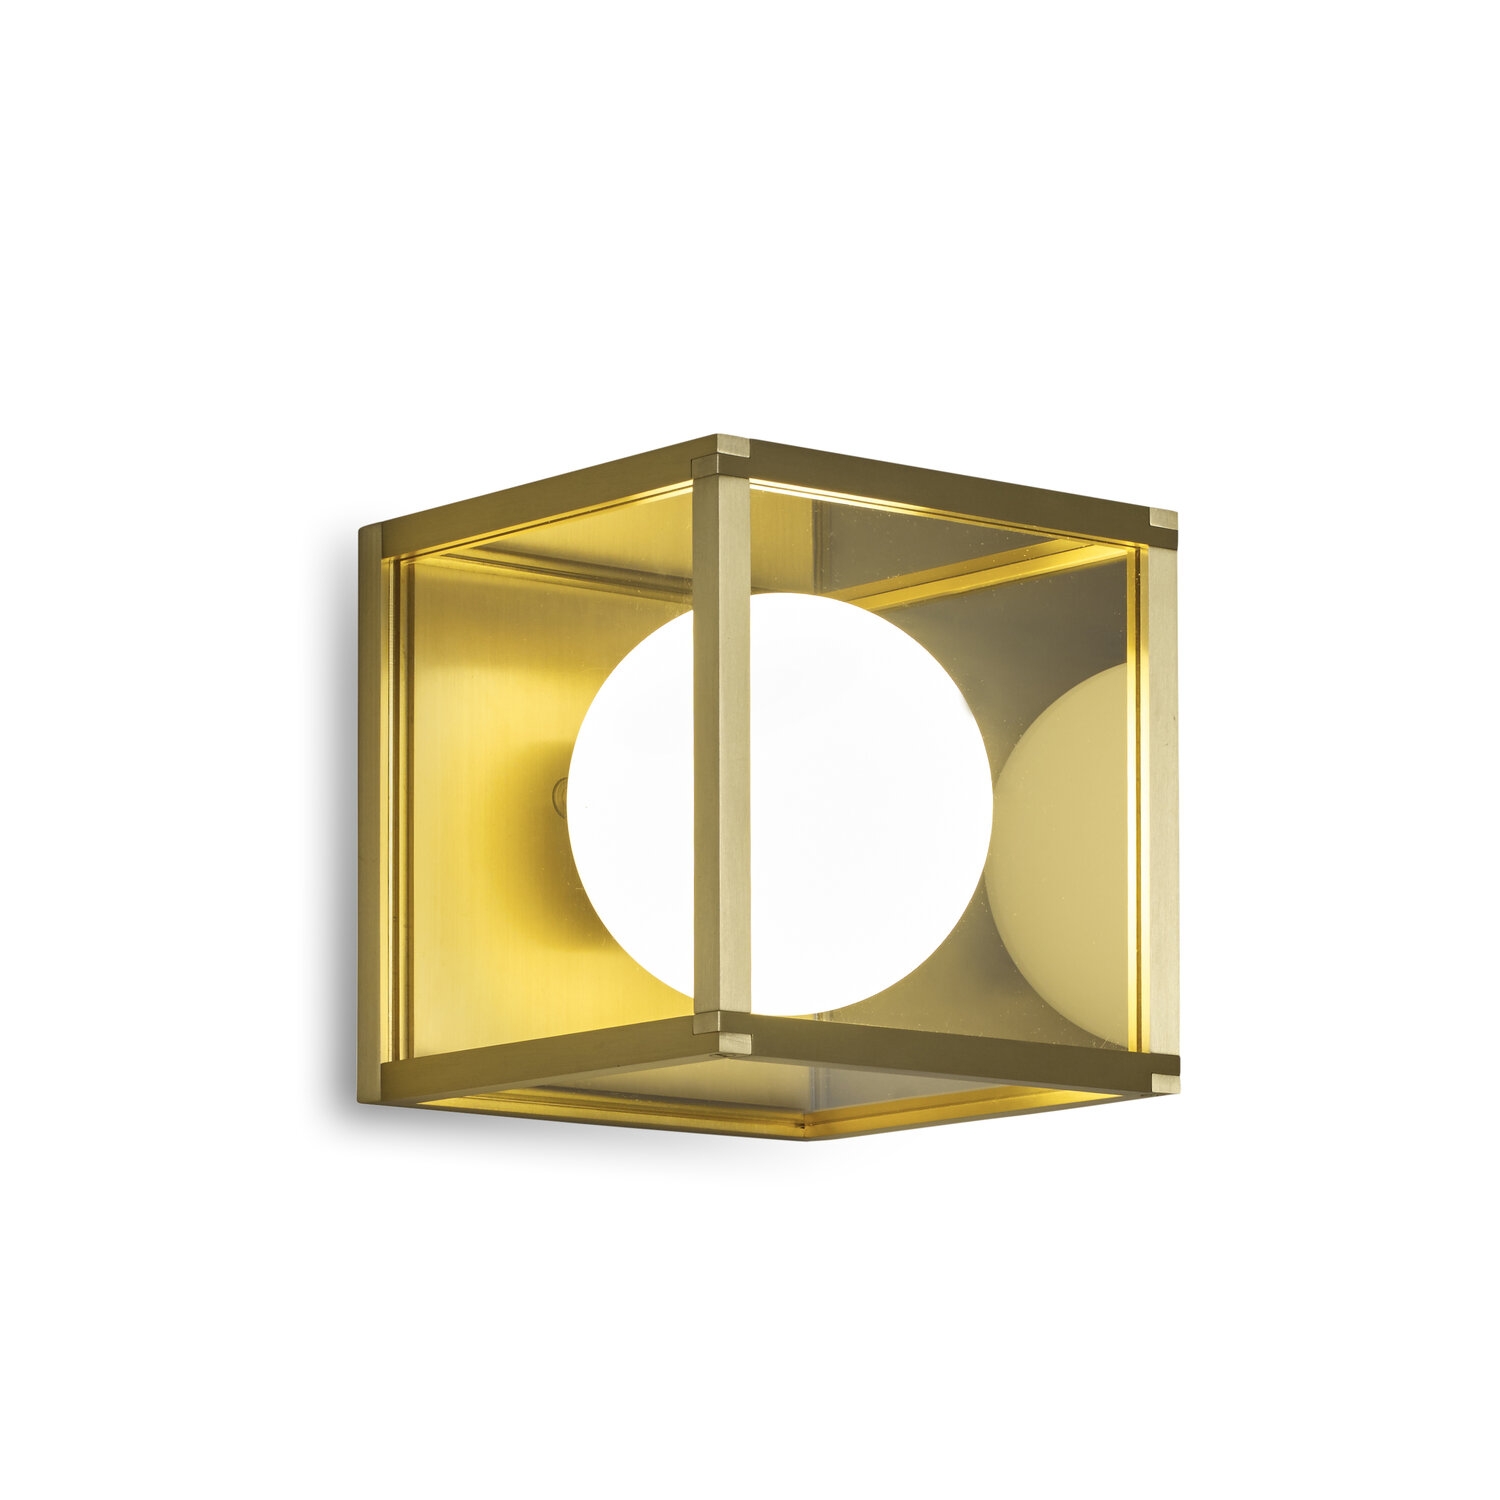 J Adams & Co – Pearl 1 – Wall Light Fixture – Brass Colour – Brass Material